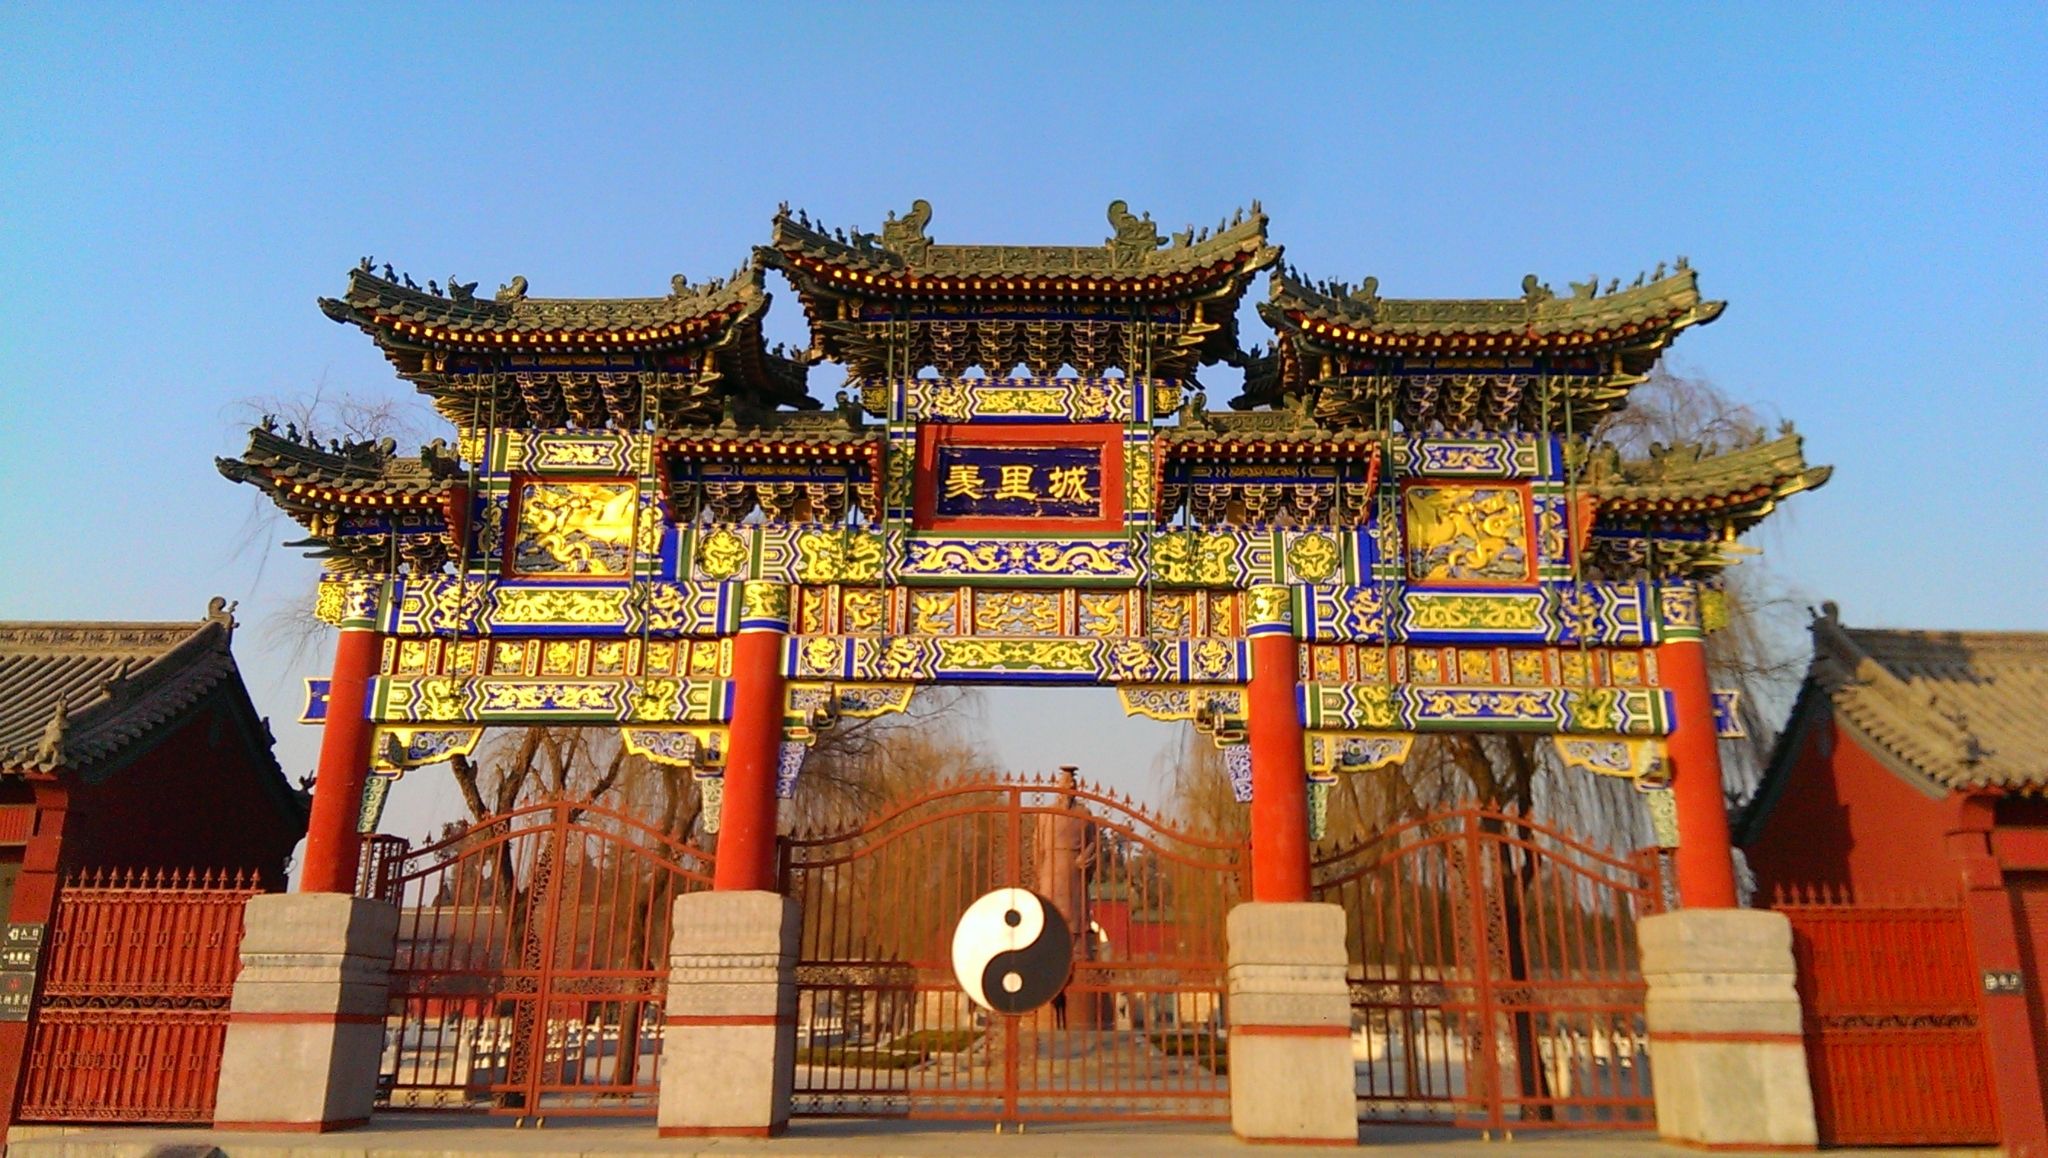 河南汤阴县的著名景点图片